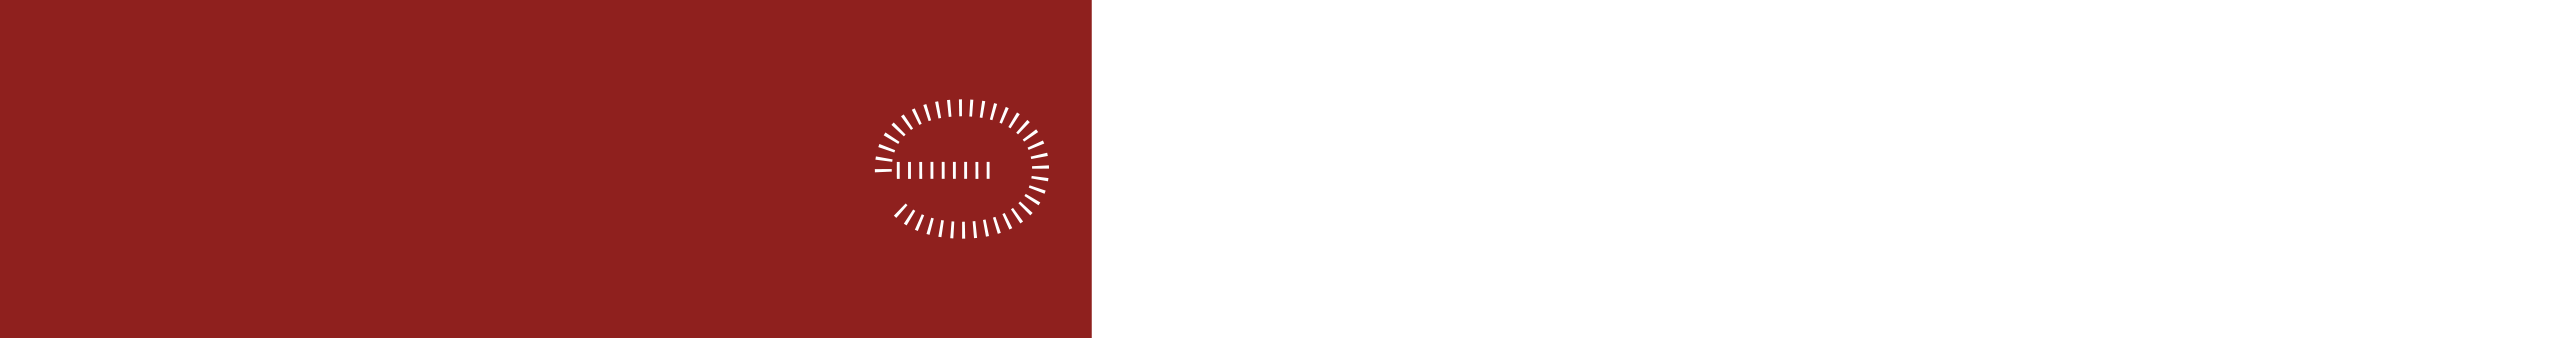 ge-logo-full